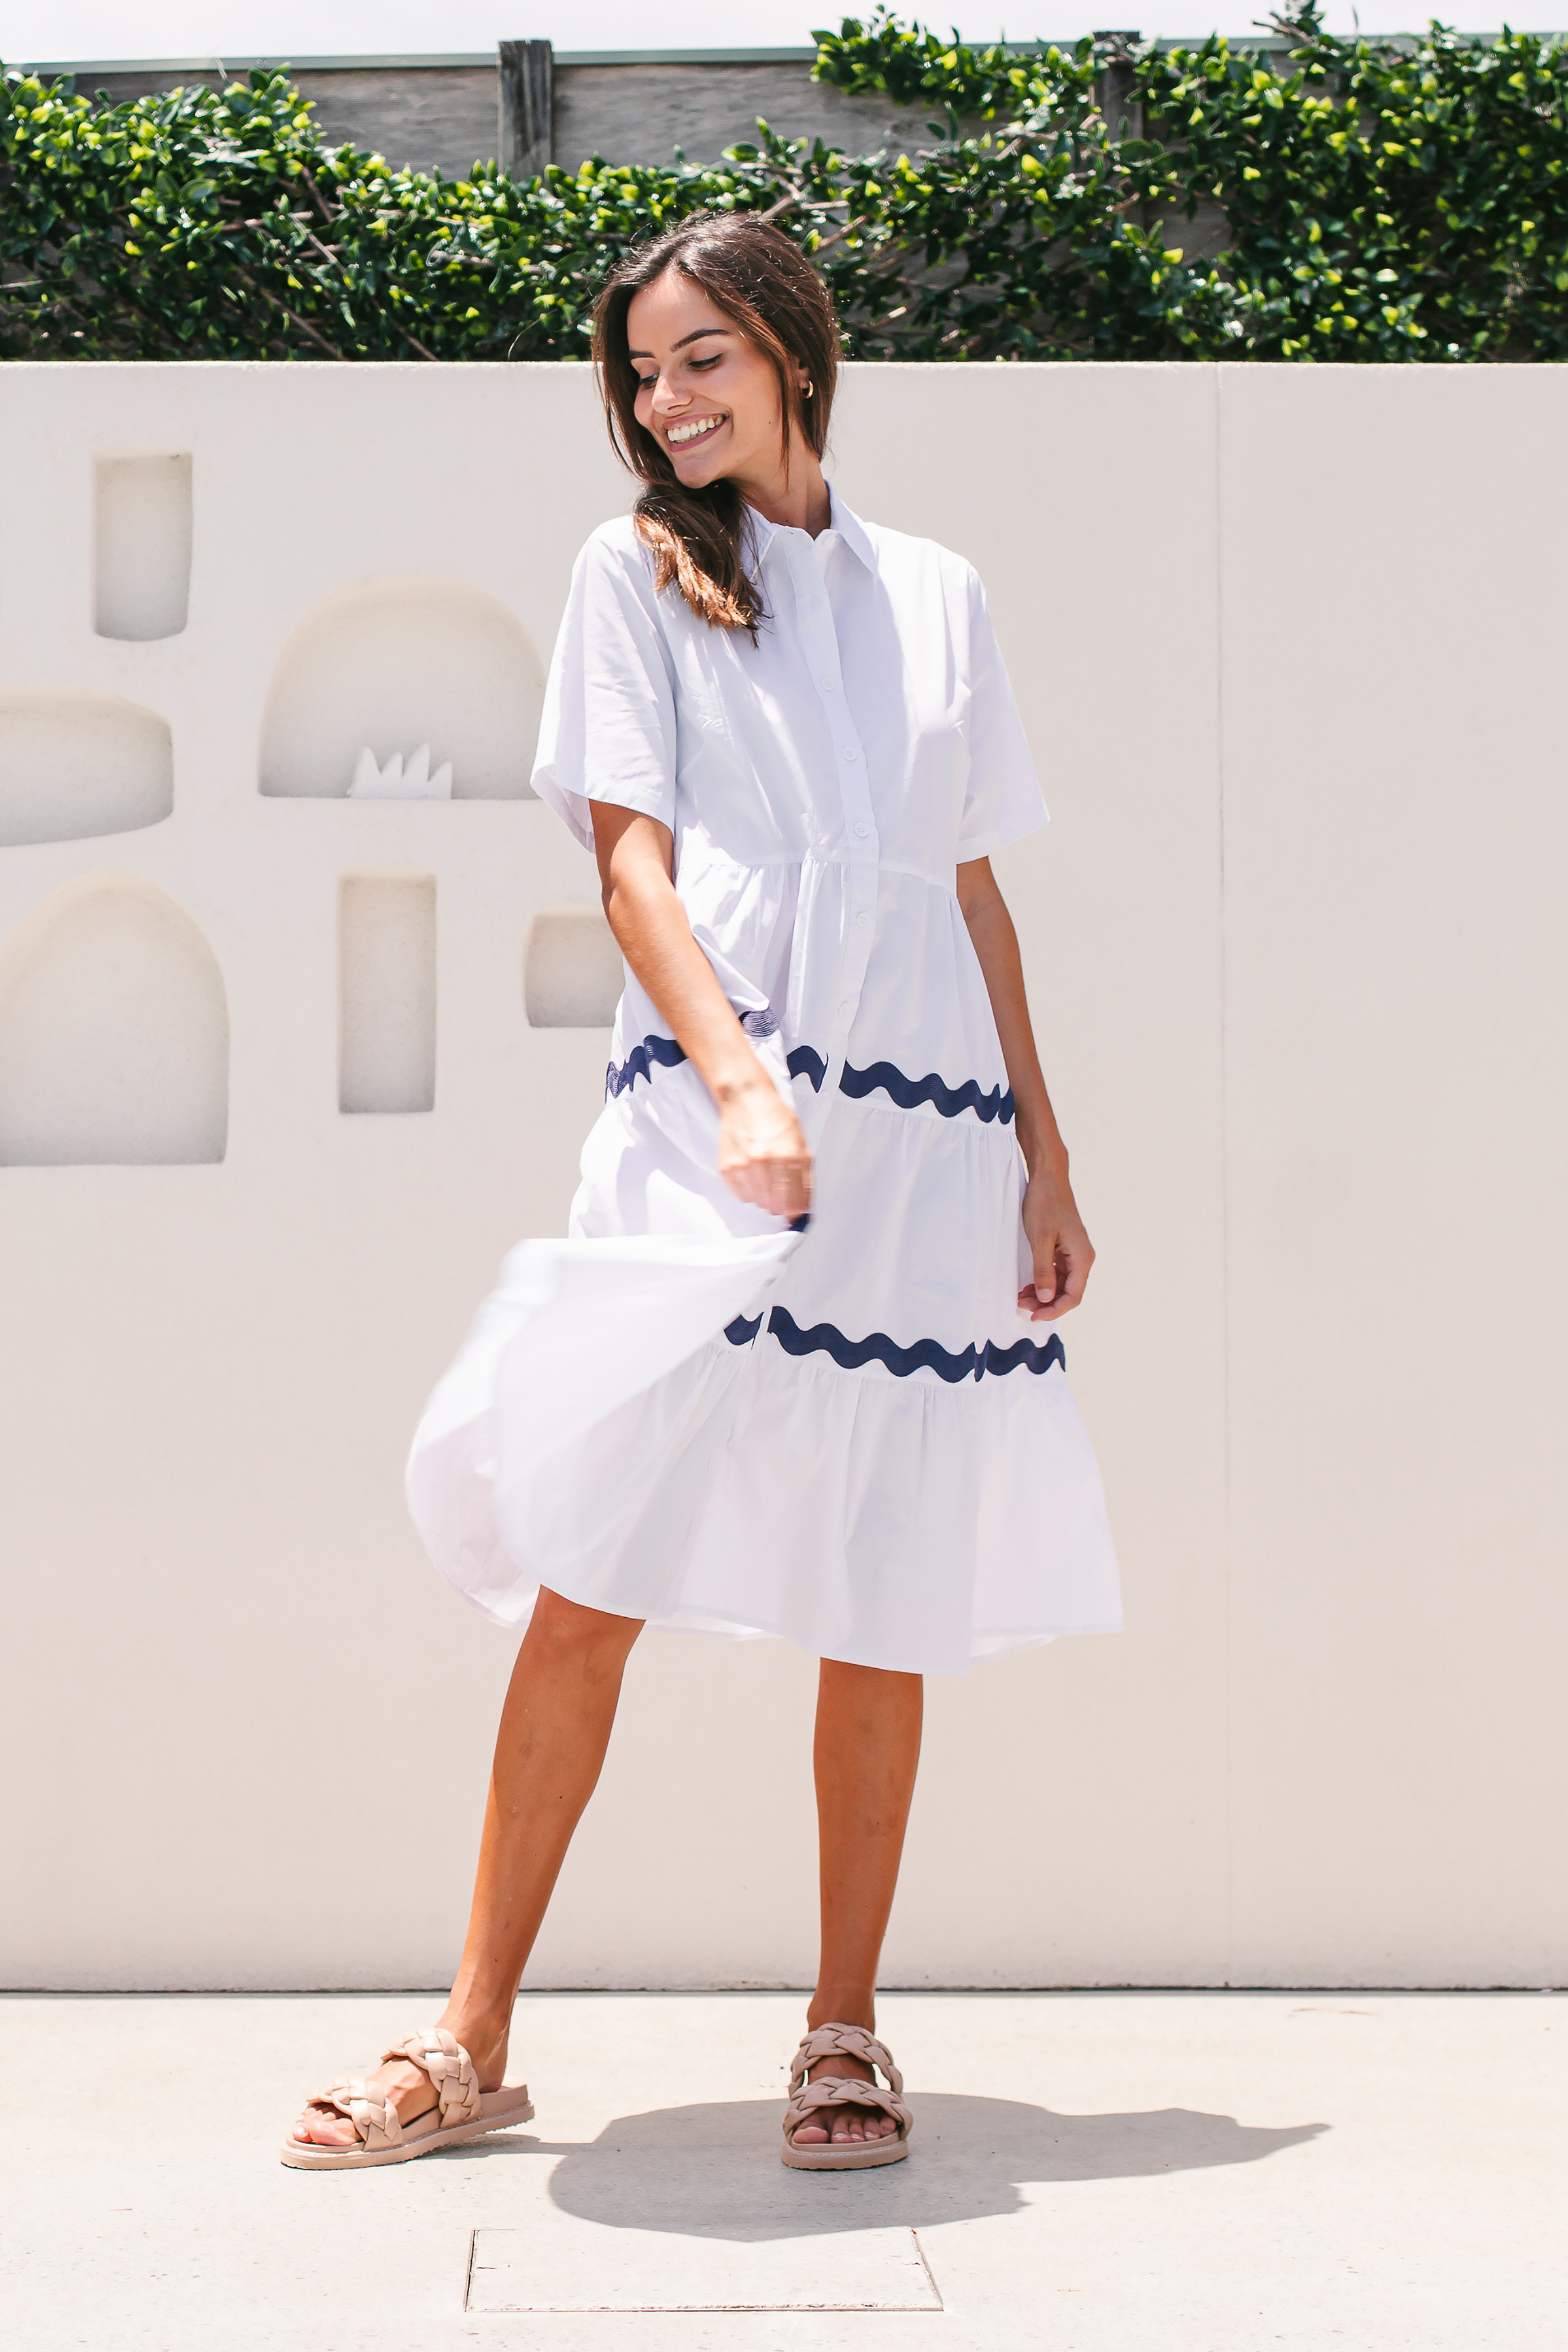 FREYA Midi Shirt Dress in White and Navy